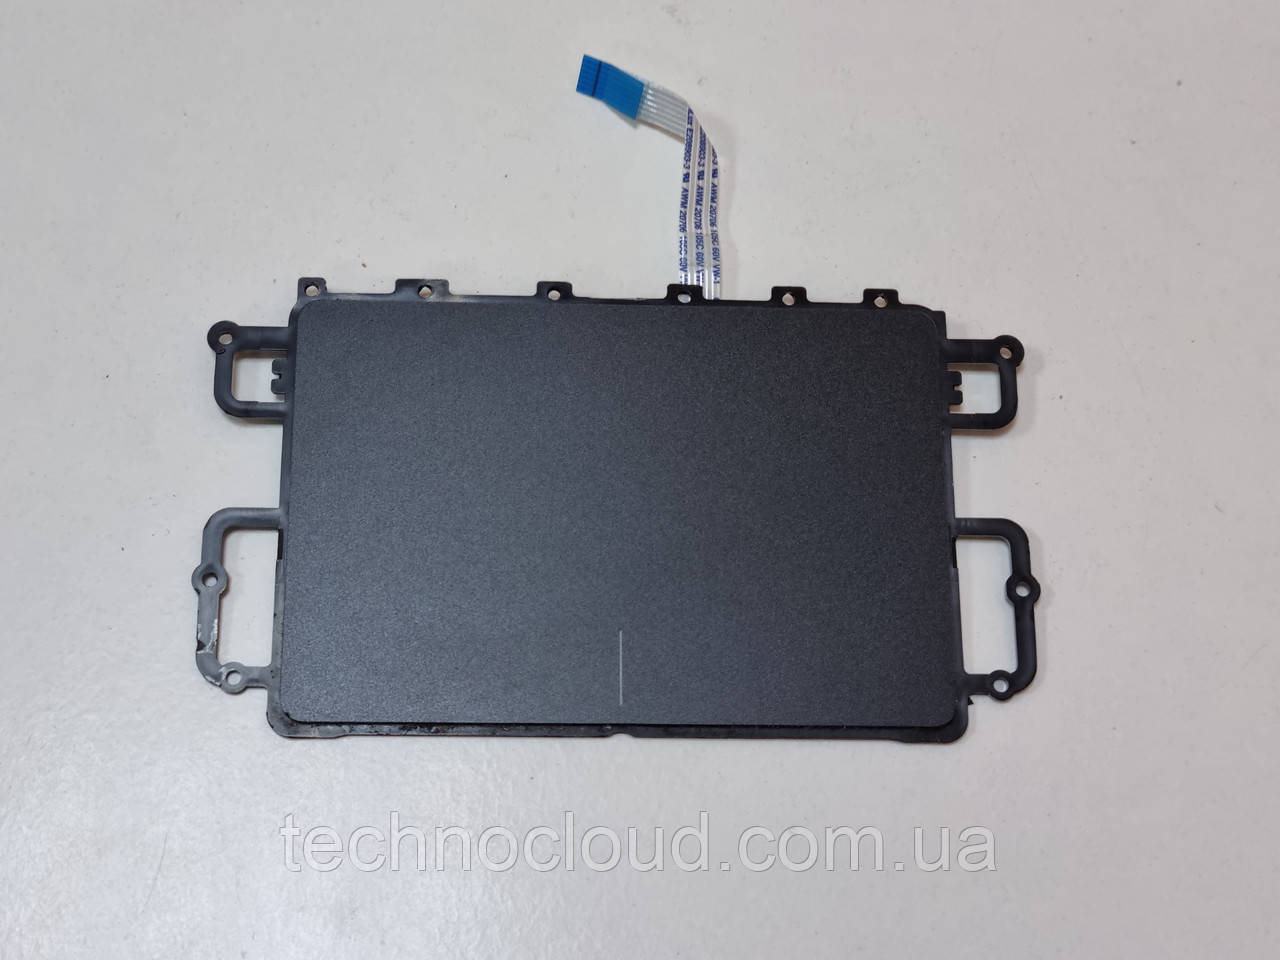 Тачпад сенсорна панель зі шлейфом Lenovo IdeaPad S400 M30-70 LS-8952P 455M4238L01